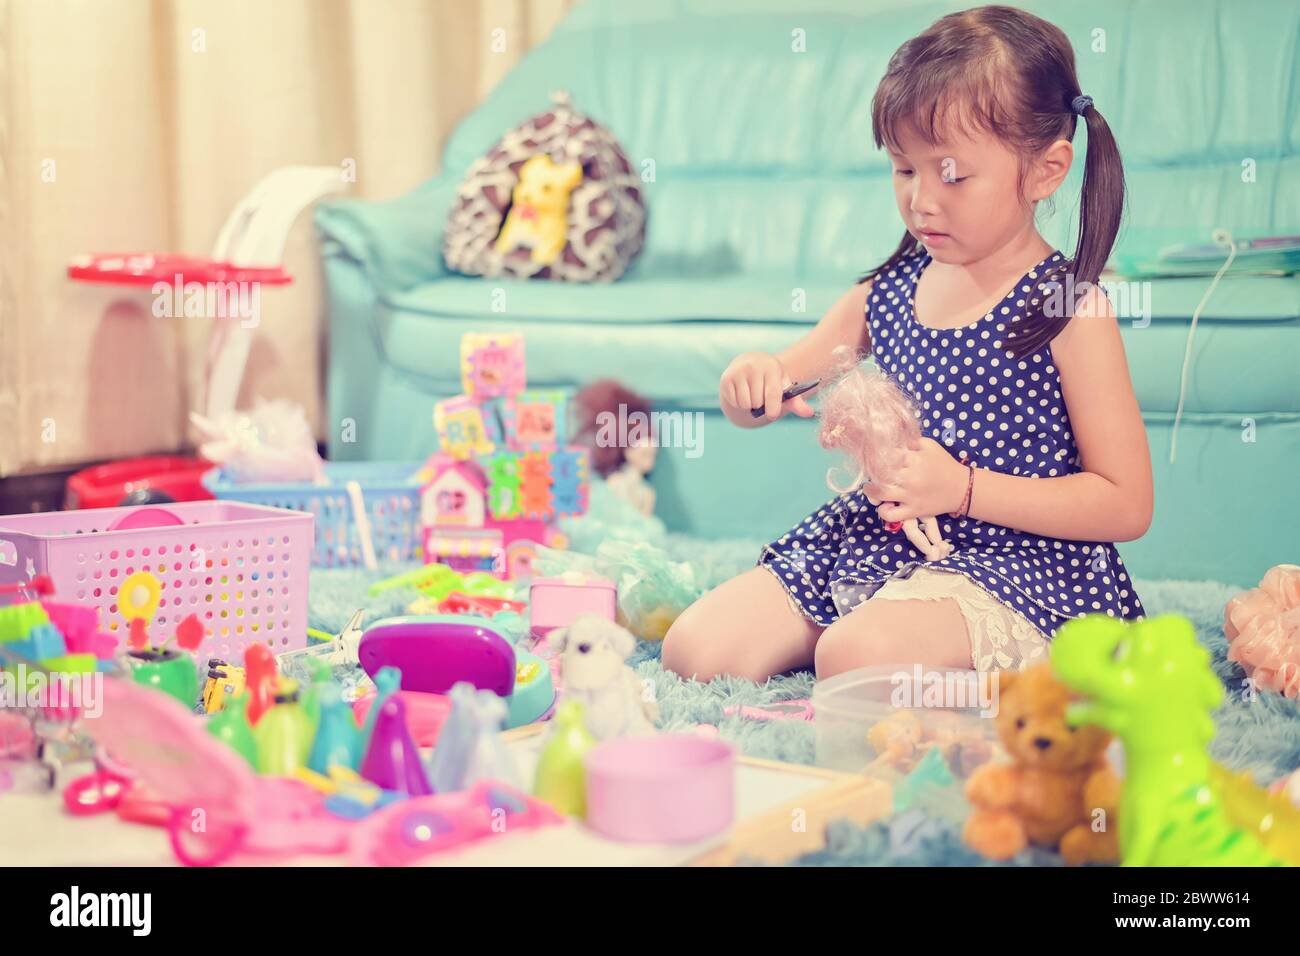 Niño niña niña jugar juguetes desorden desordenado en la sala de estar un estado sucio o desordenado de juguete y muñeca en casa Foto de stock